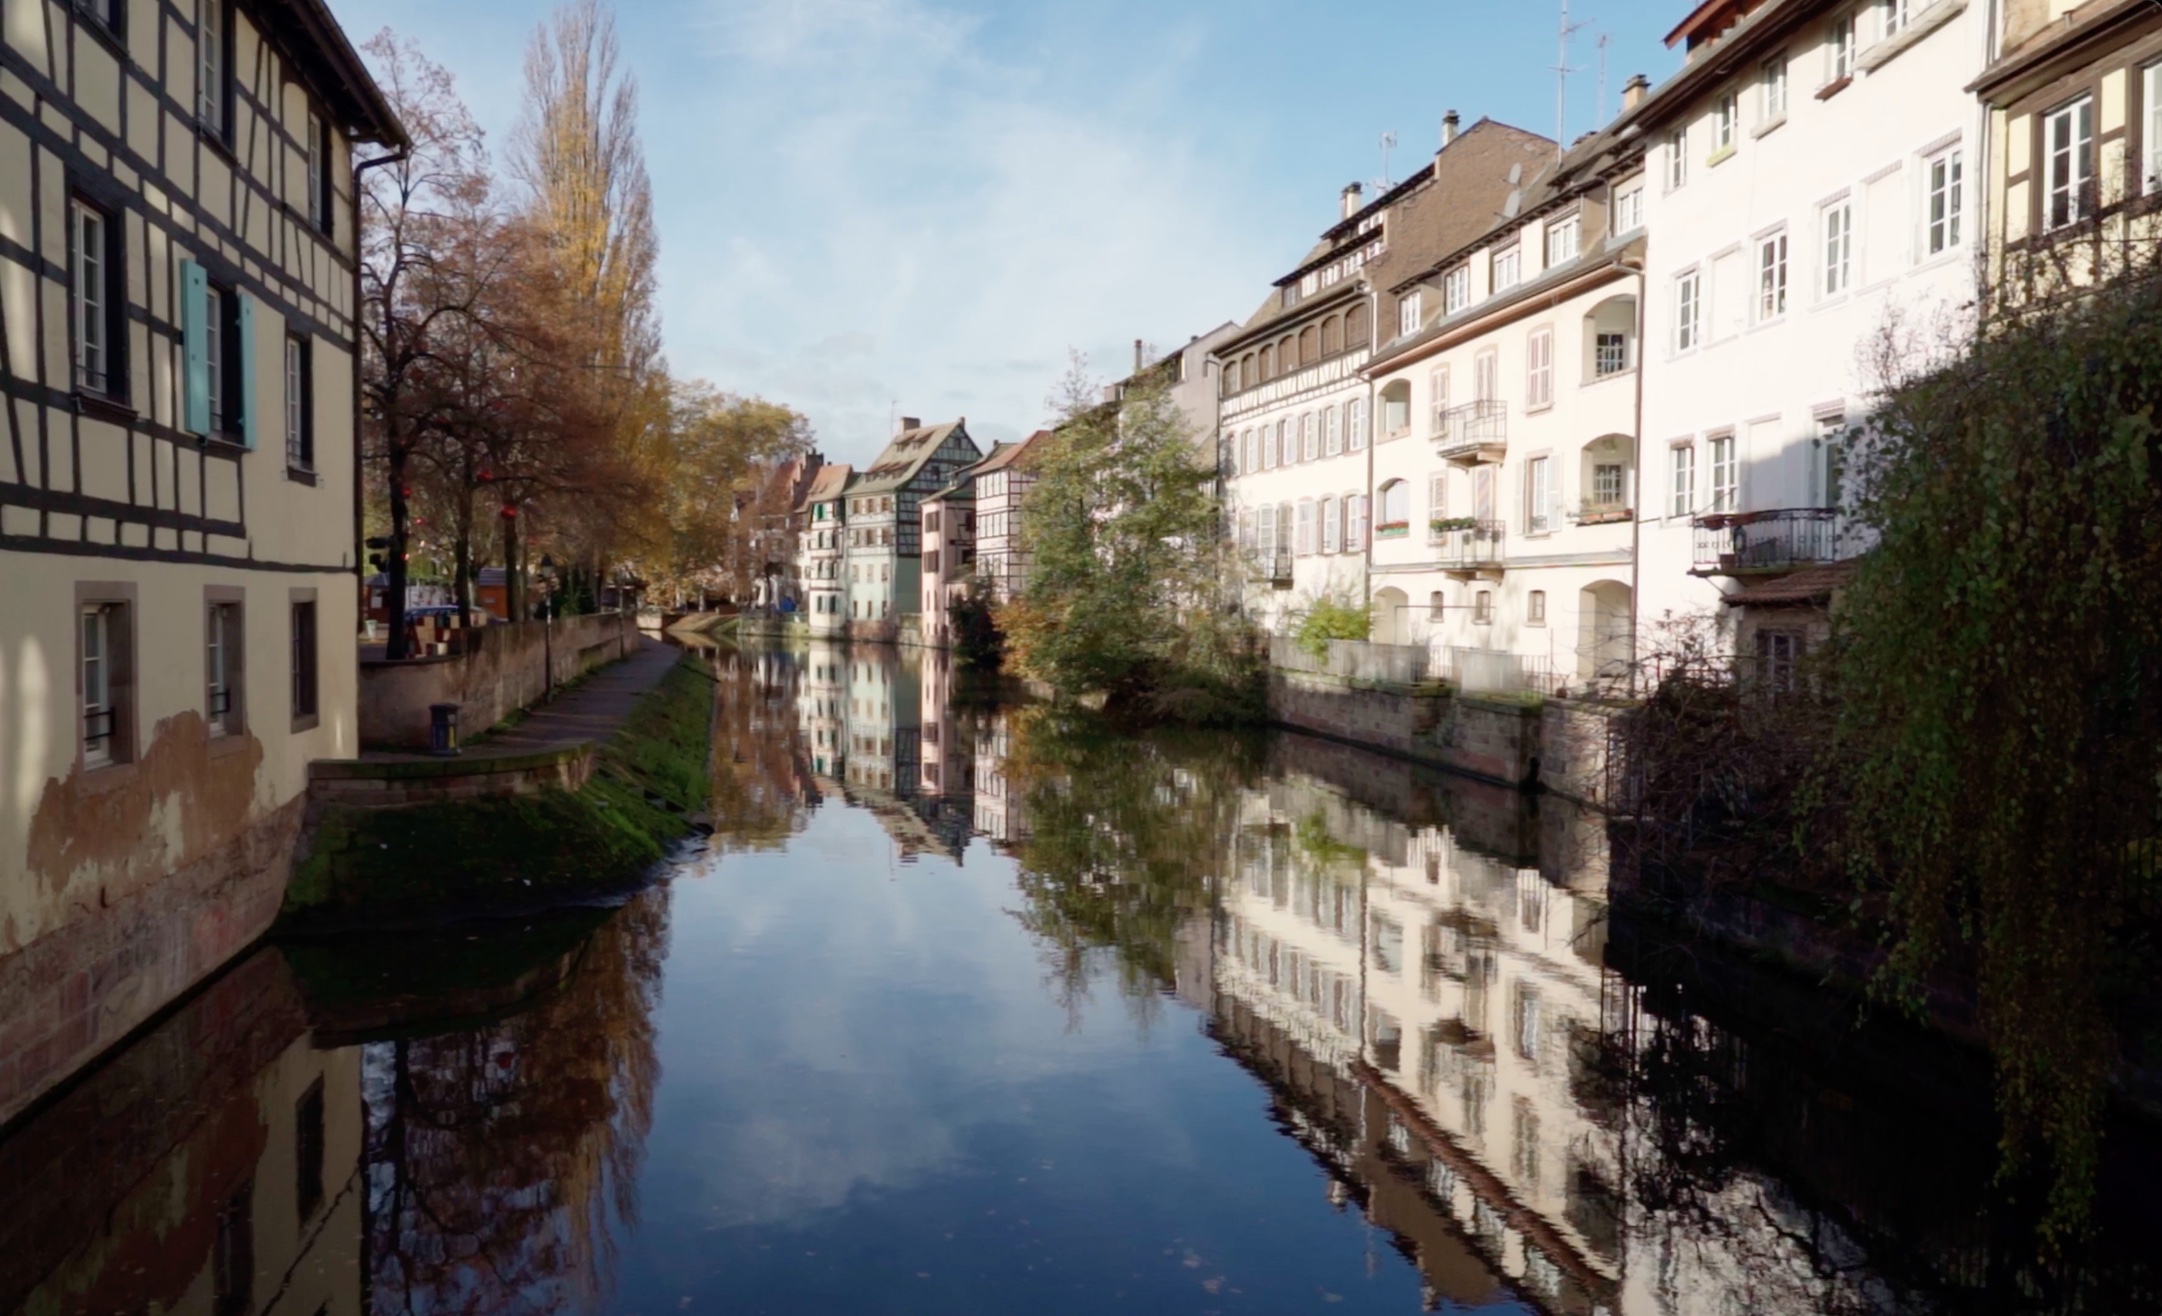 Canal del rio Ill en Estrasburgo por Despacito por el Mundo